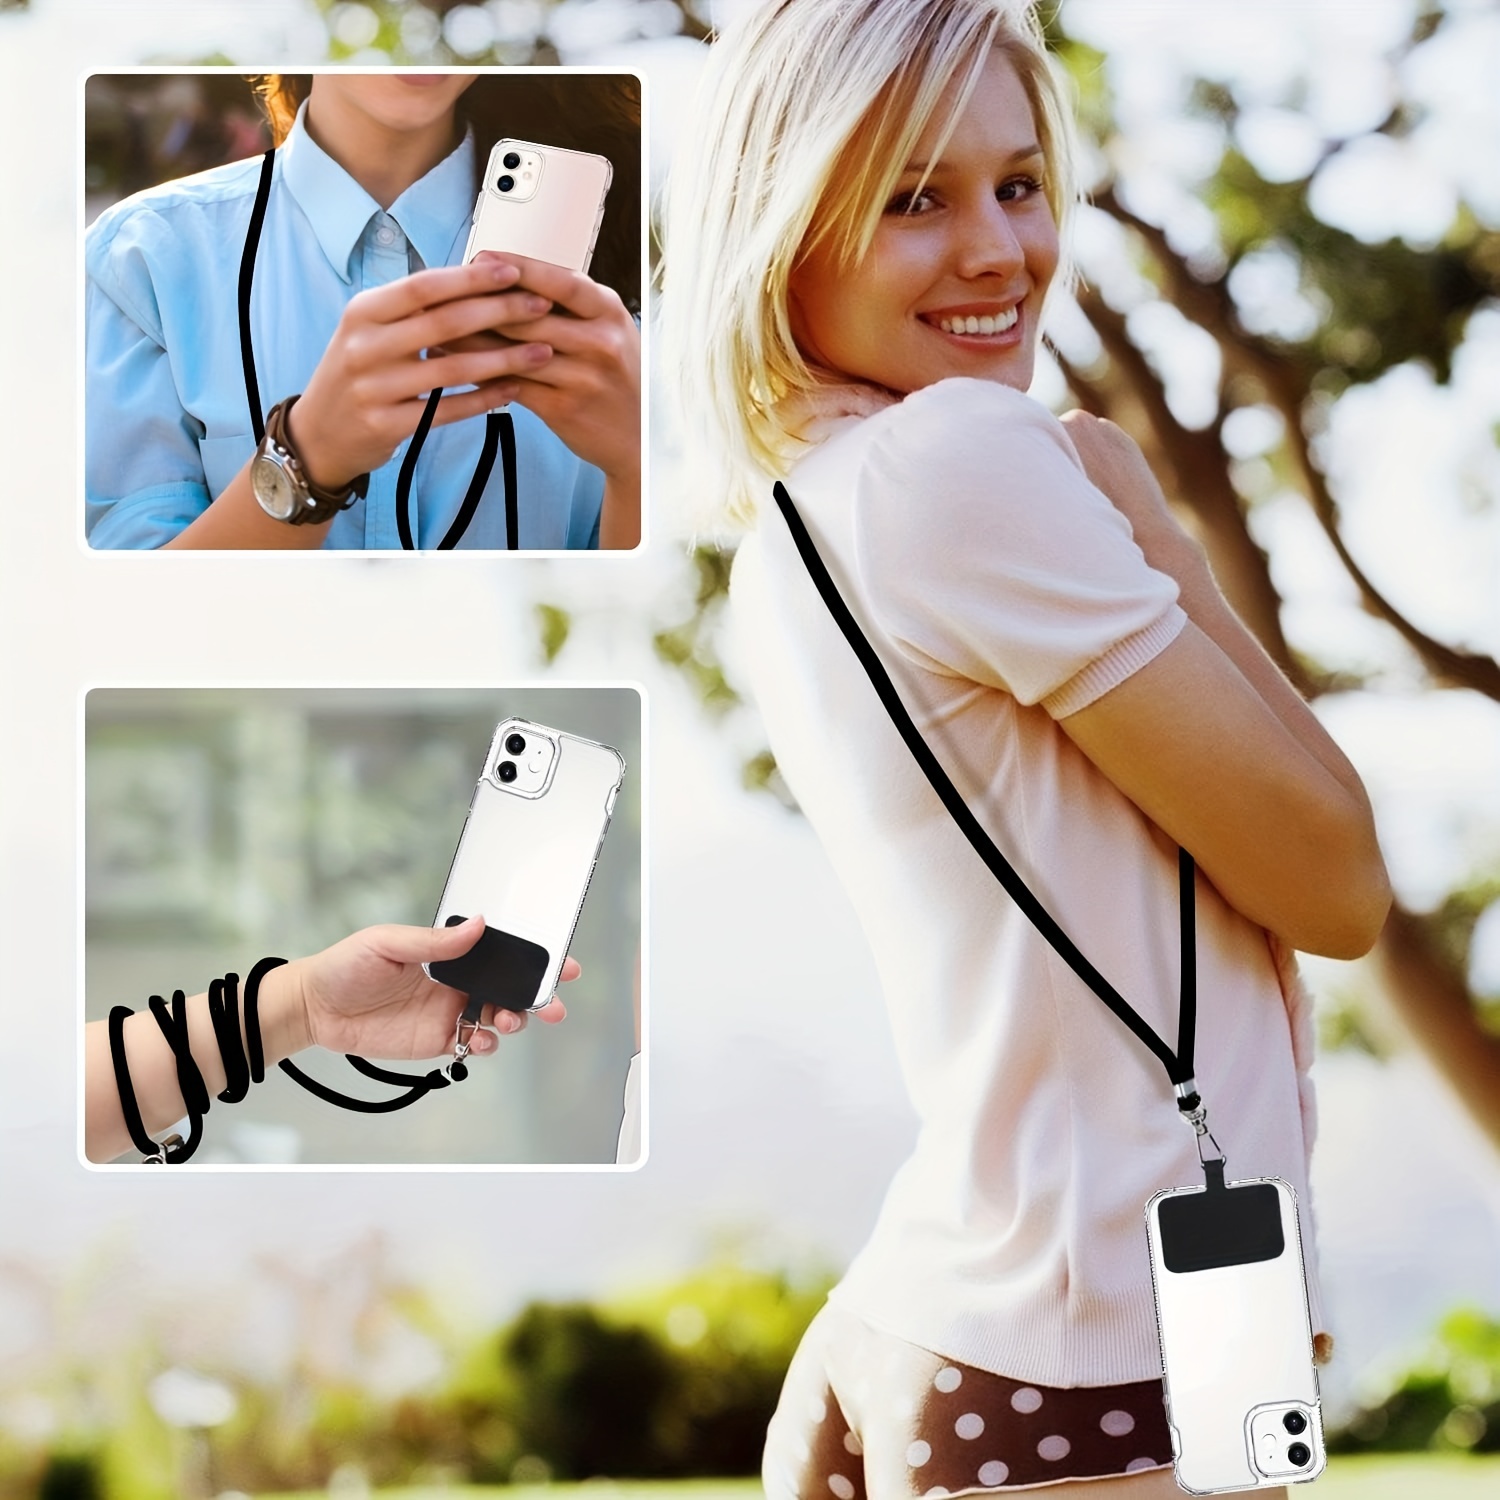 Cordón universal para teléfono celular, con correa ajustable de nailon para  el cuello, compatible con la mayoría de las fundas de teléfonos